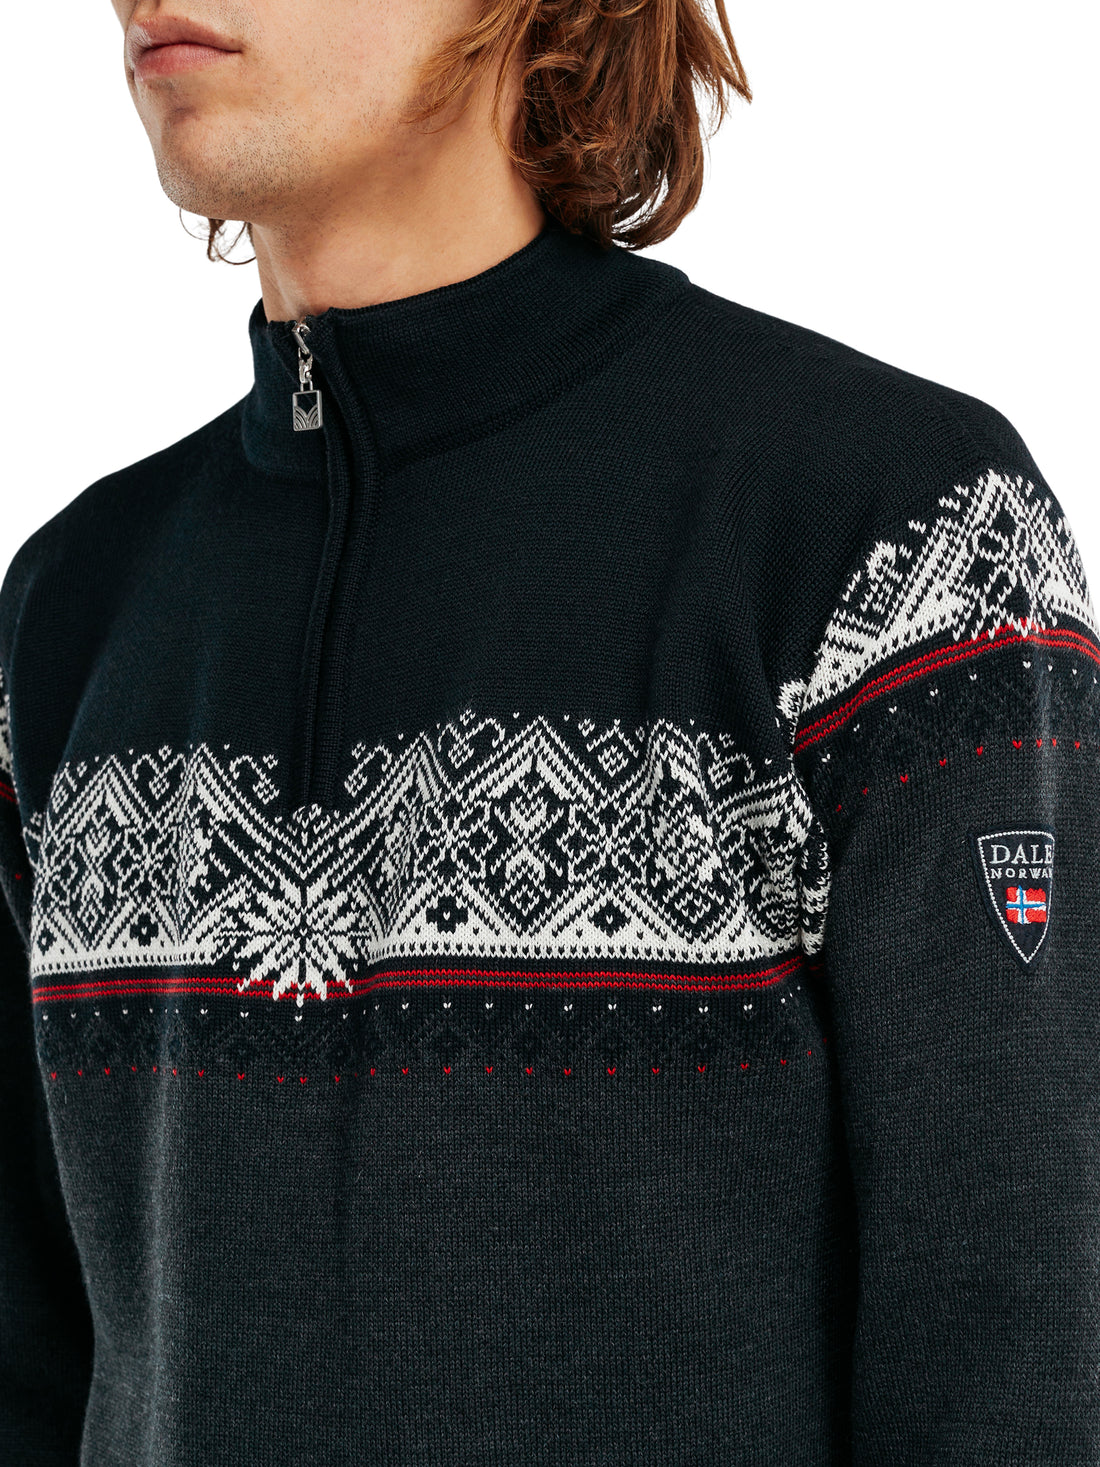 Dale of Norway - Moritz Men's Sweater - Dark Charcoal